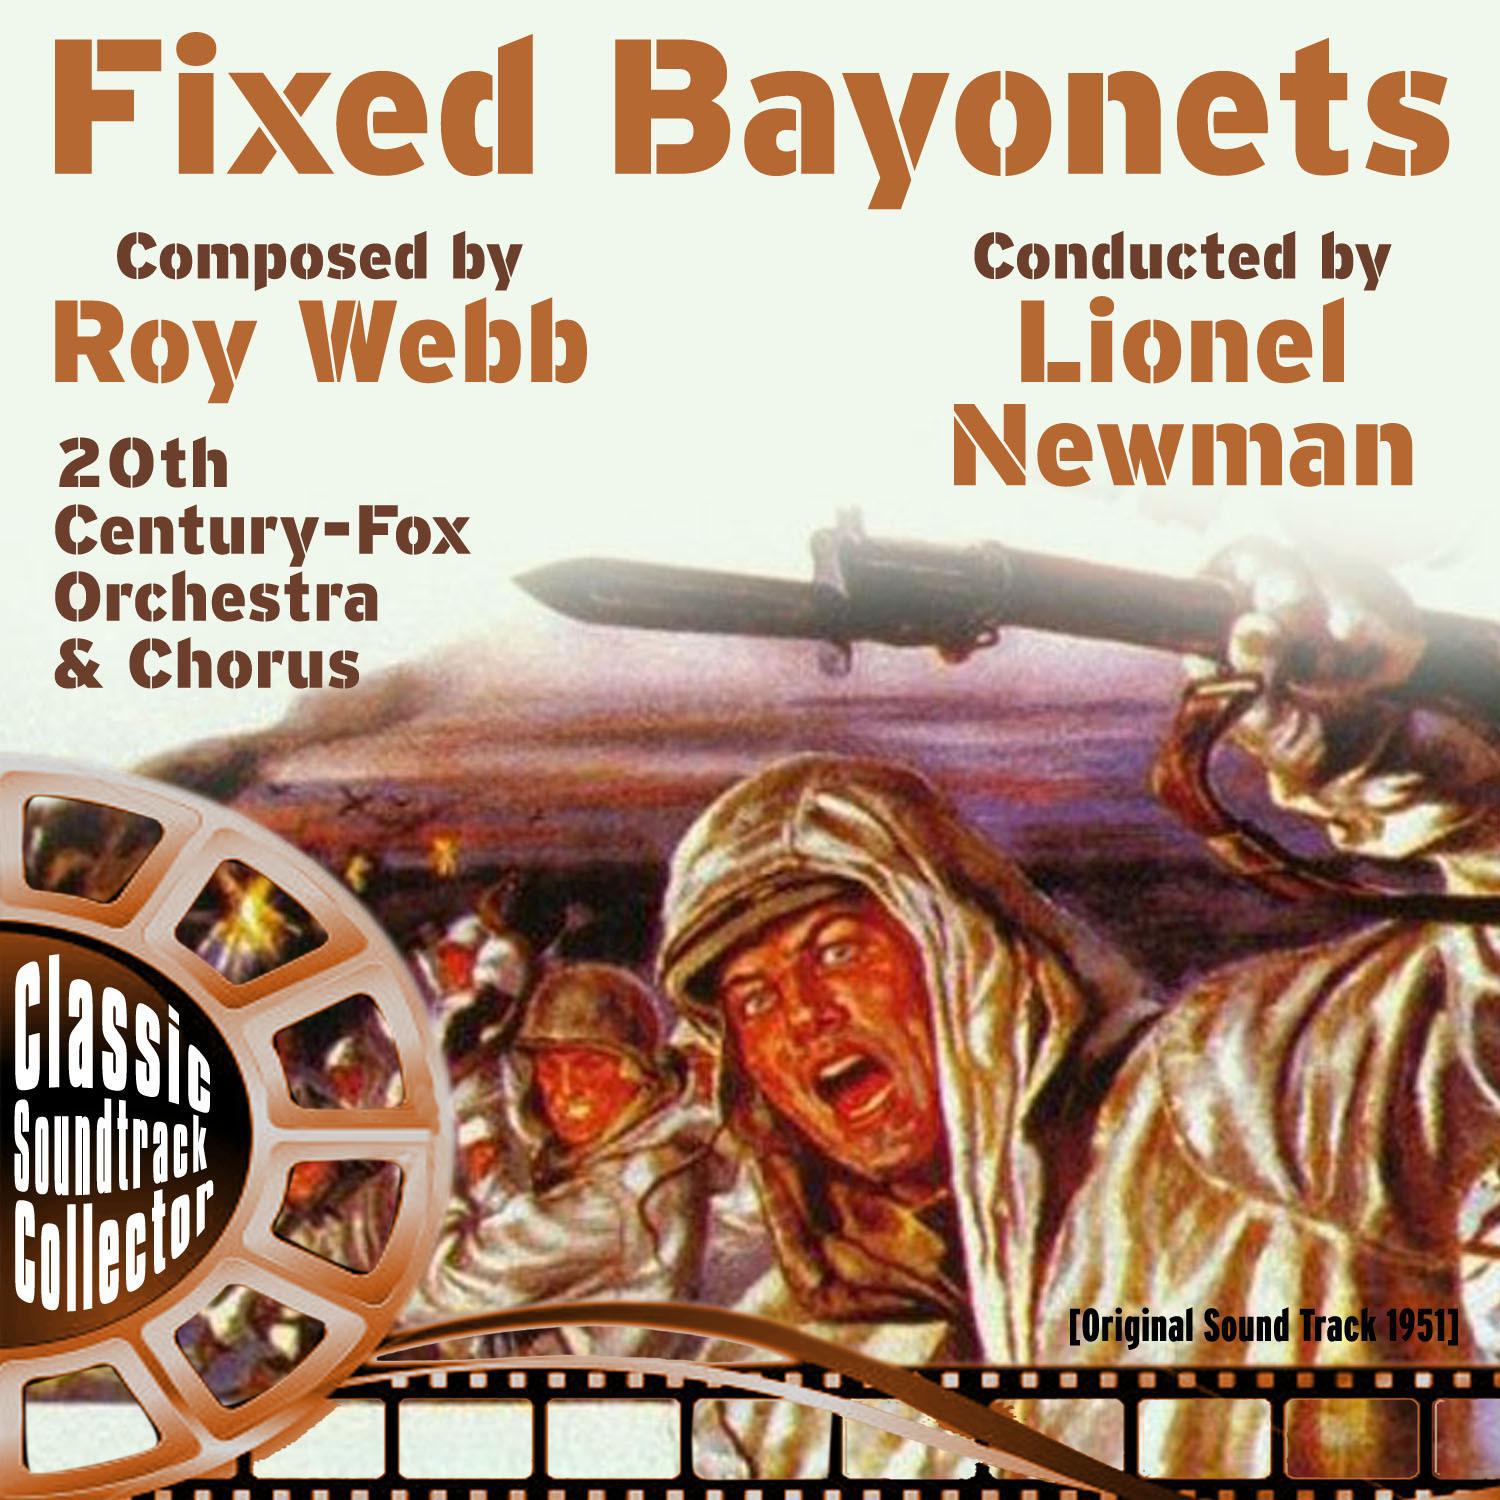 Fixed Bayonets (Original Soundtrack) [1951]